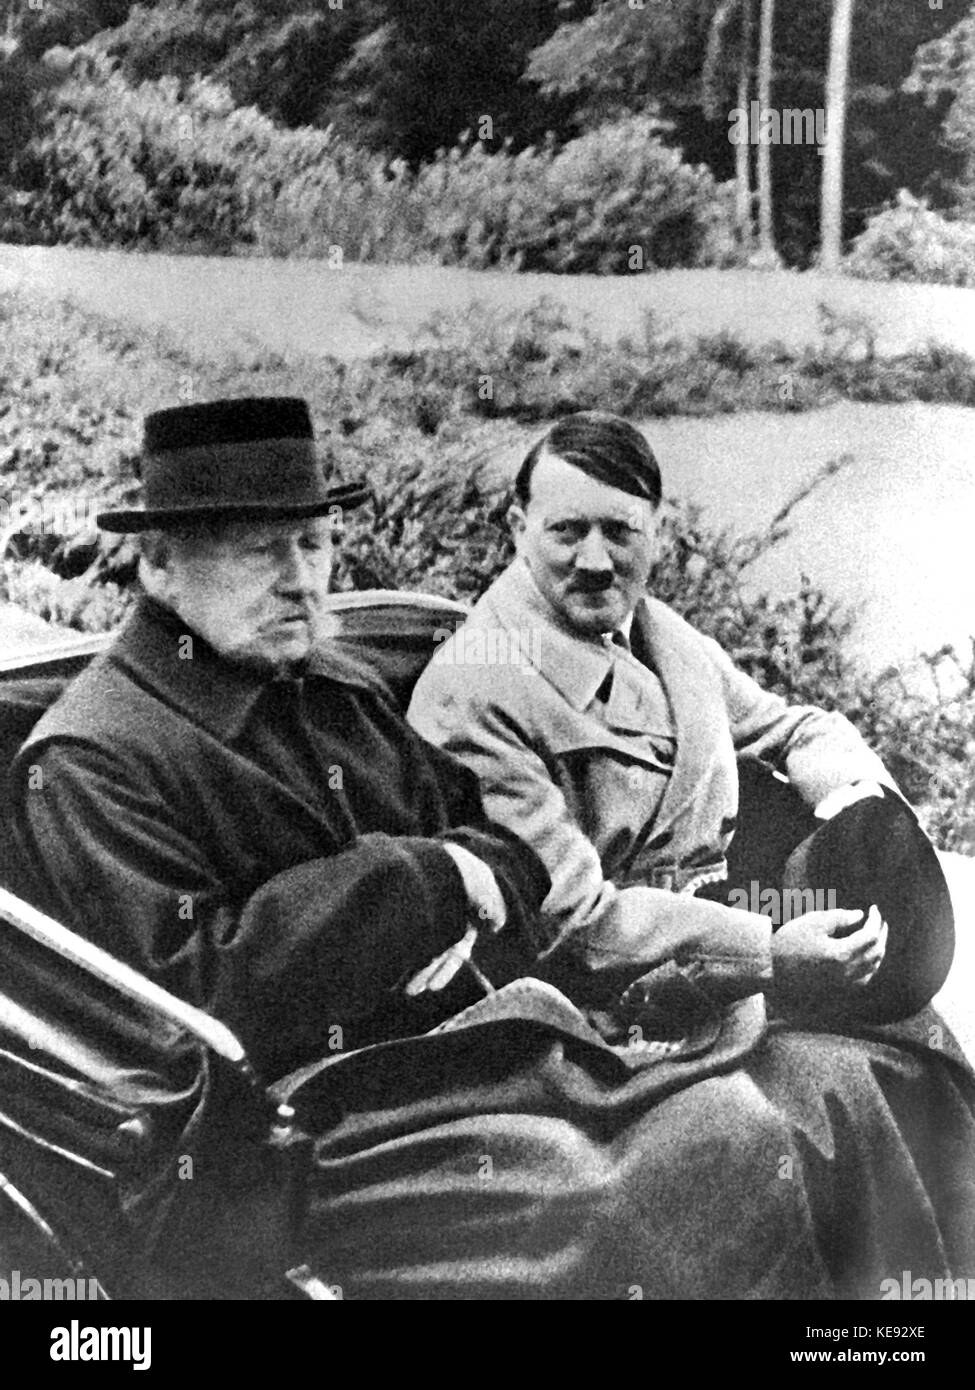 Reichskanzler adolf Hitler (r) et le président Paul von Hindenburg (l) dans le cheval-dessin entraîneur de neudeck (Prusse orientale) 1933/34 | conditions dans le monde entier Banque D'Images